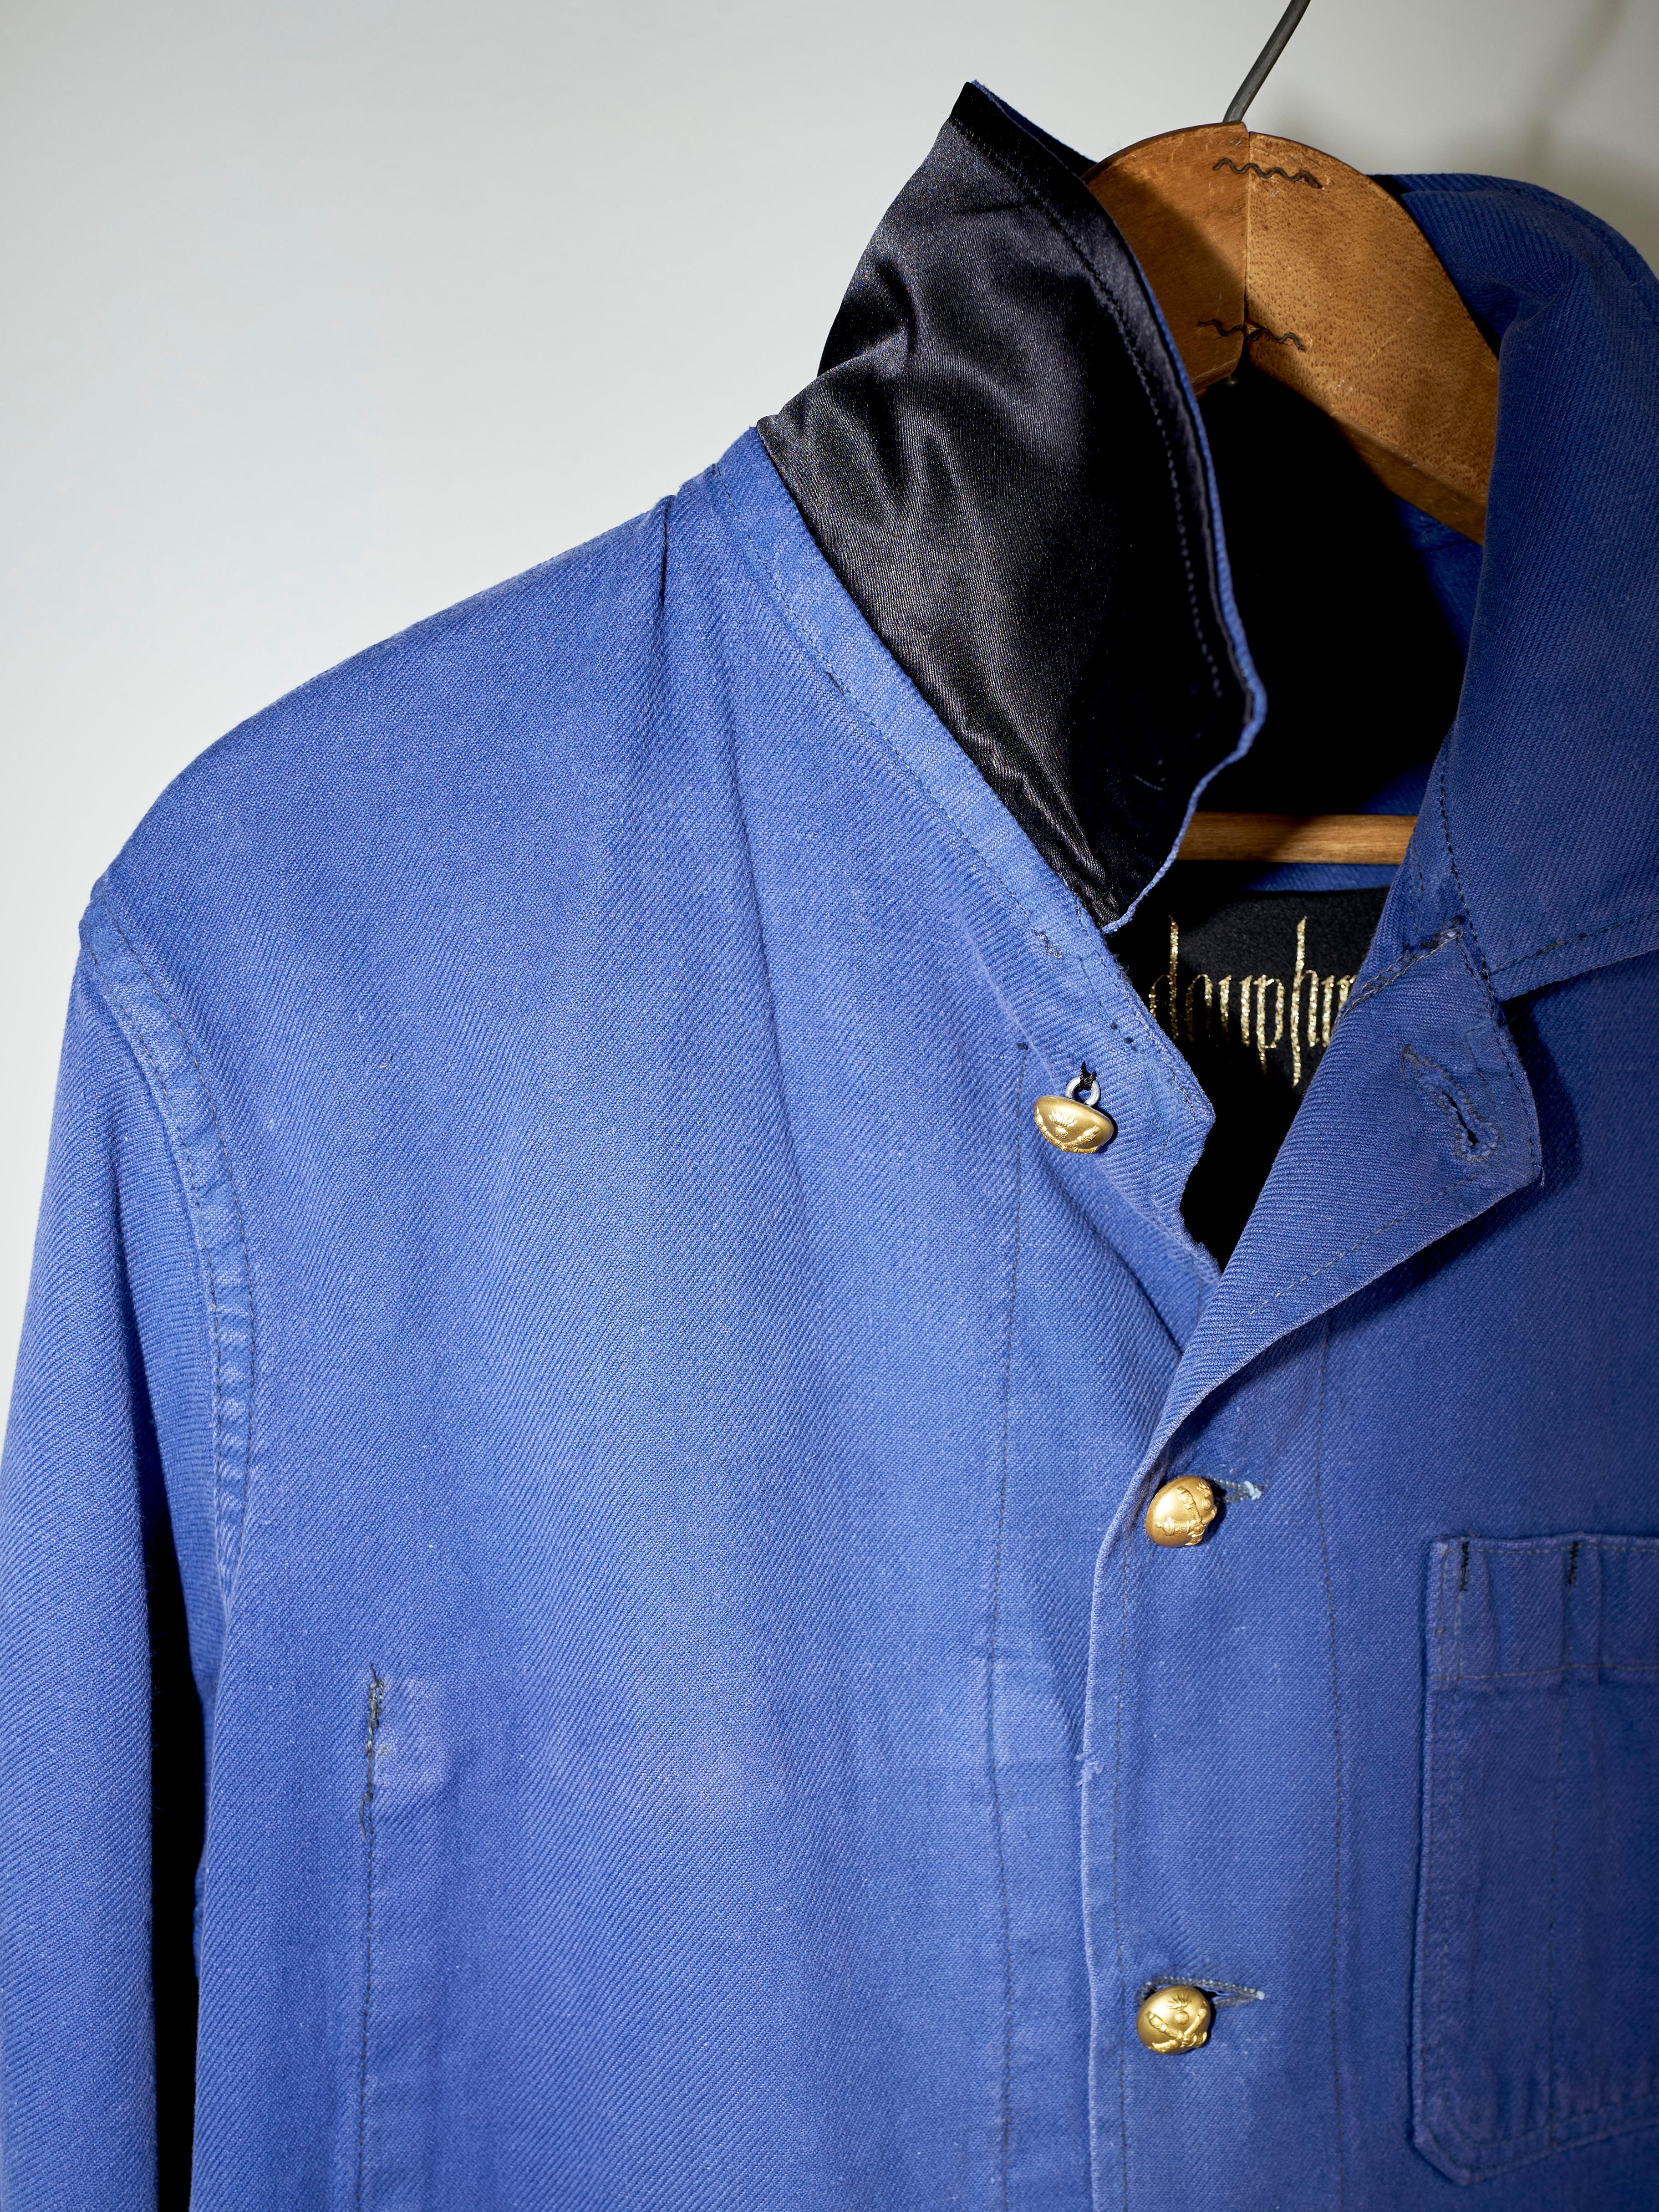 Embellished Fringe Jacket Blue Cotton French Work Wear  Small 1